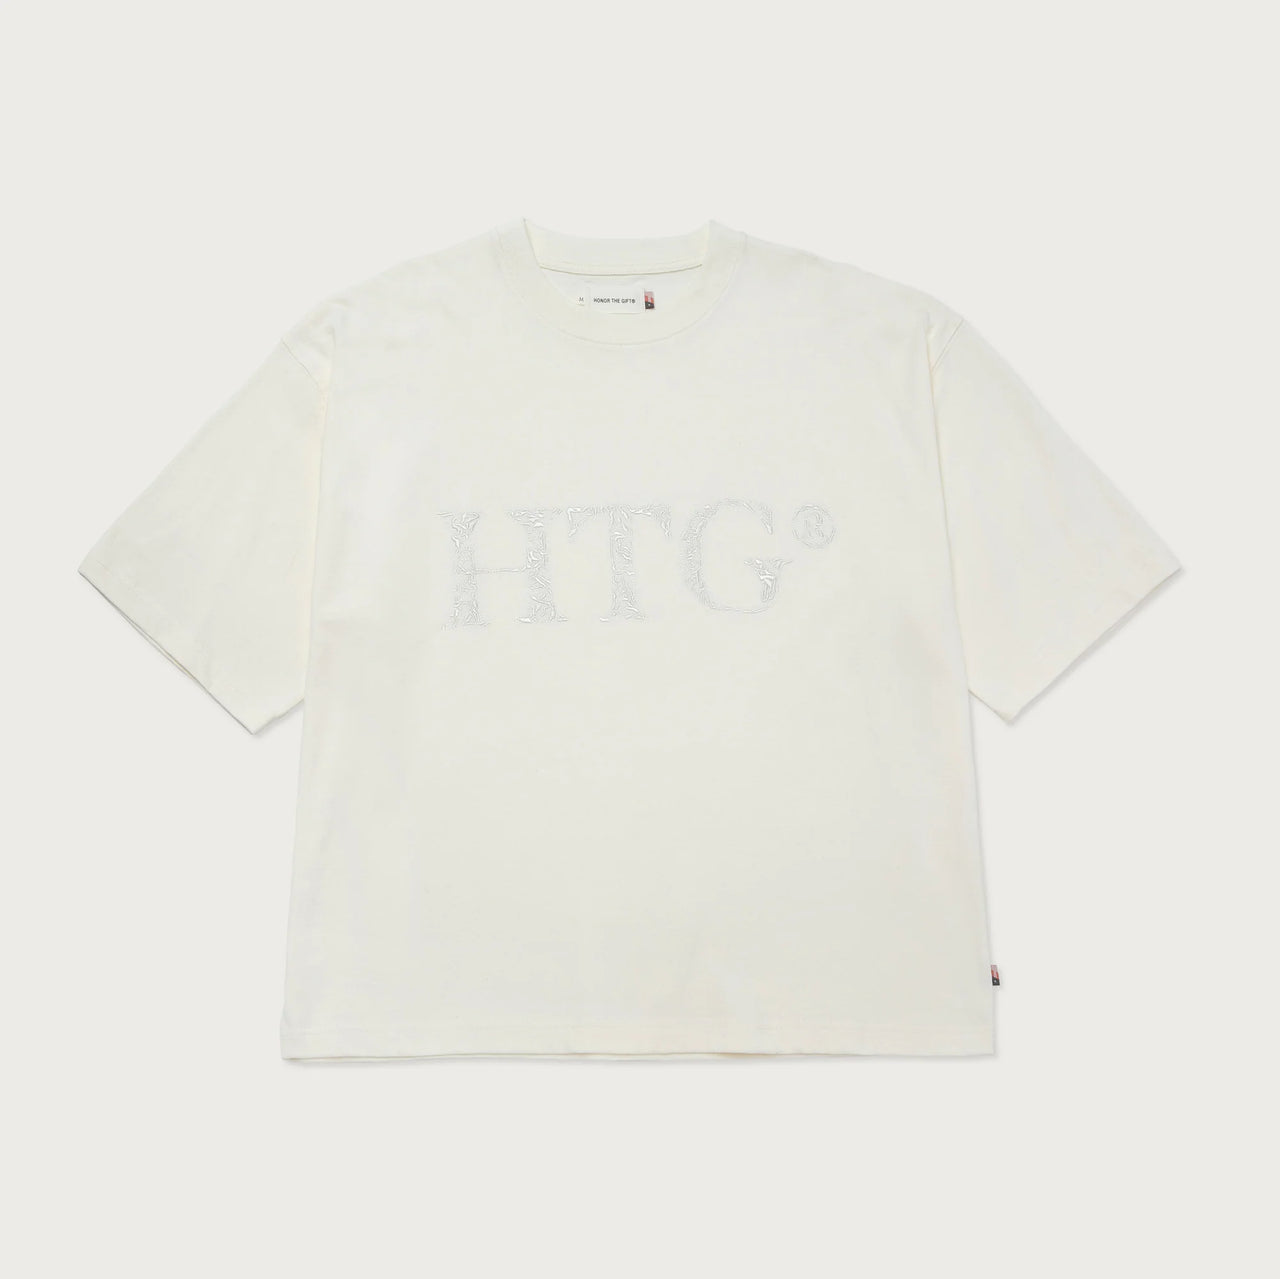 HTG Box T-Shirt - Bone